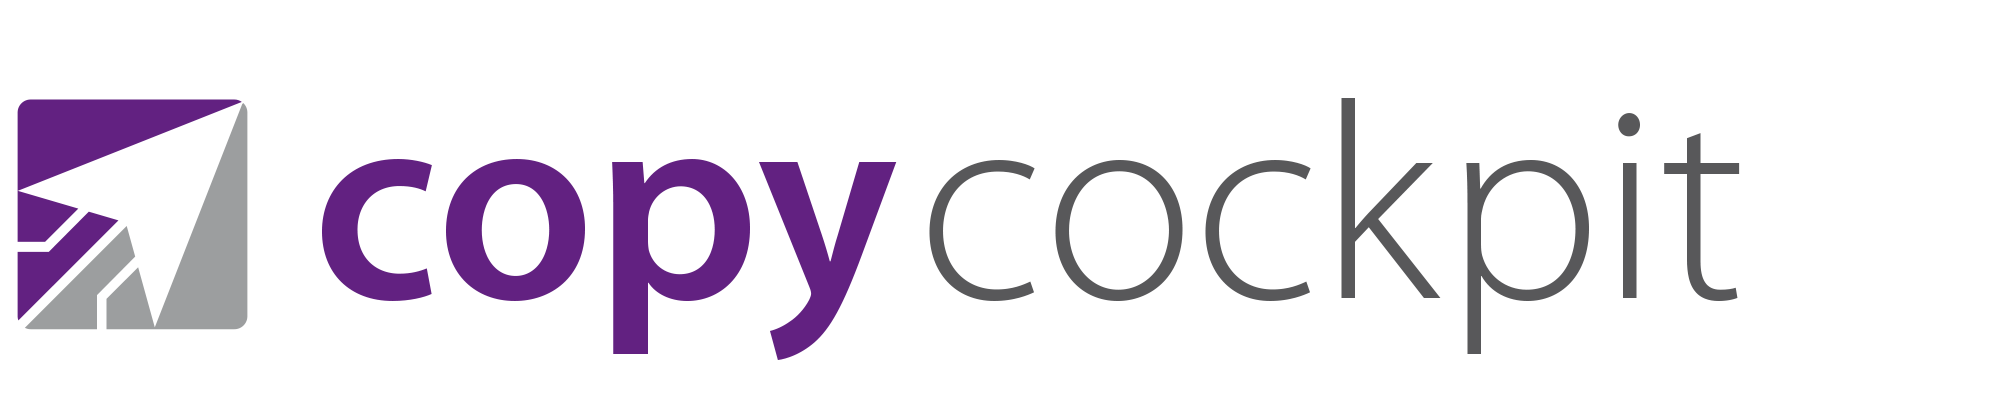 CopyCockpit_Logo_V02.png